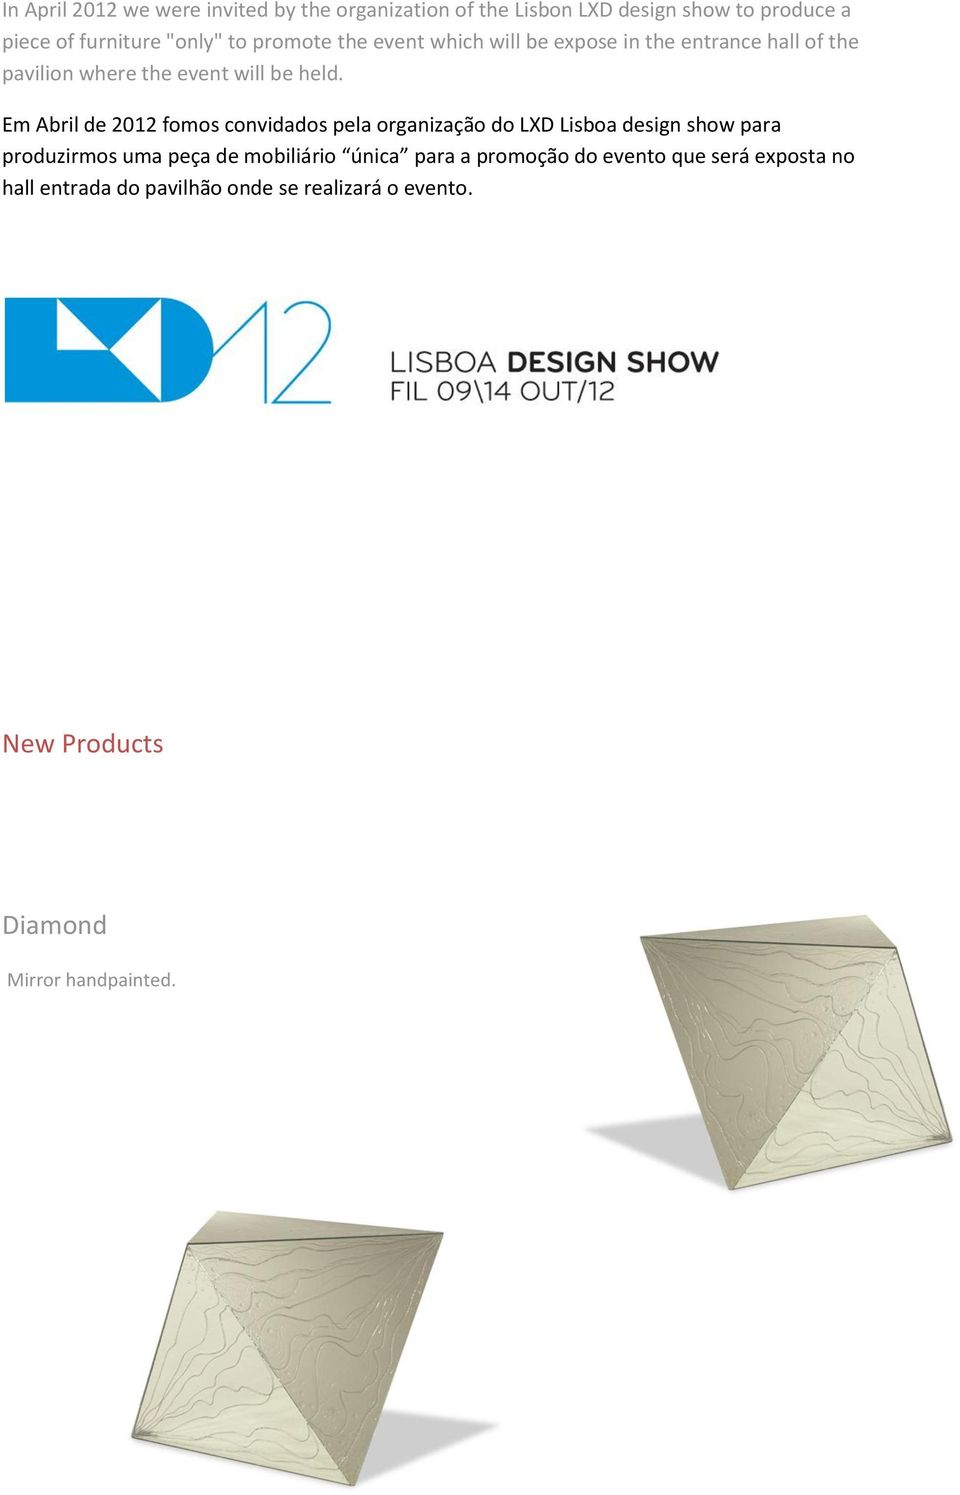 Em Abril de 2012 fomos convidados pela organização do LXD Lisboa design show para produzirmos uma peça de mobiliário única